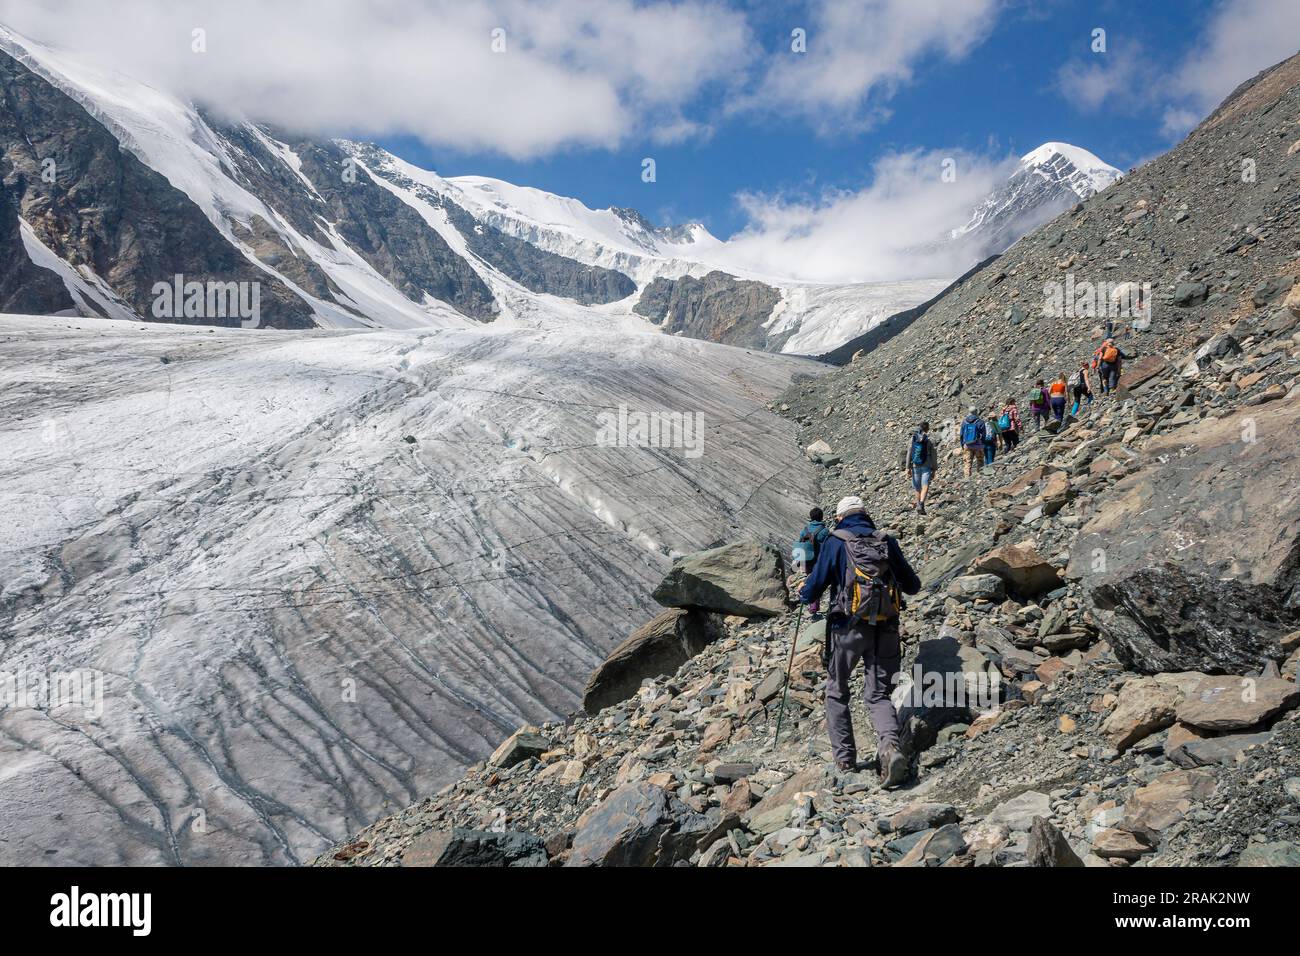 Un gruppo di turisti sale lungo un ghiacciaio nelle montagne dell'Altai. Aktru al giorno d'estate. Foto Stock